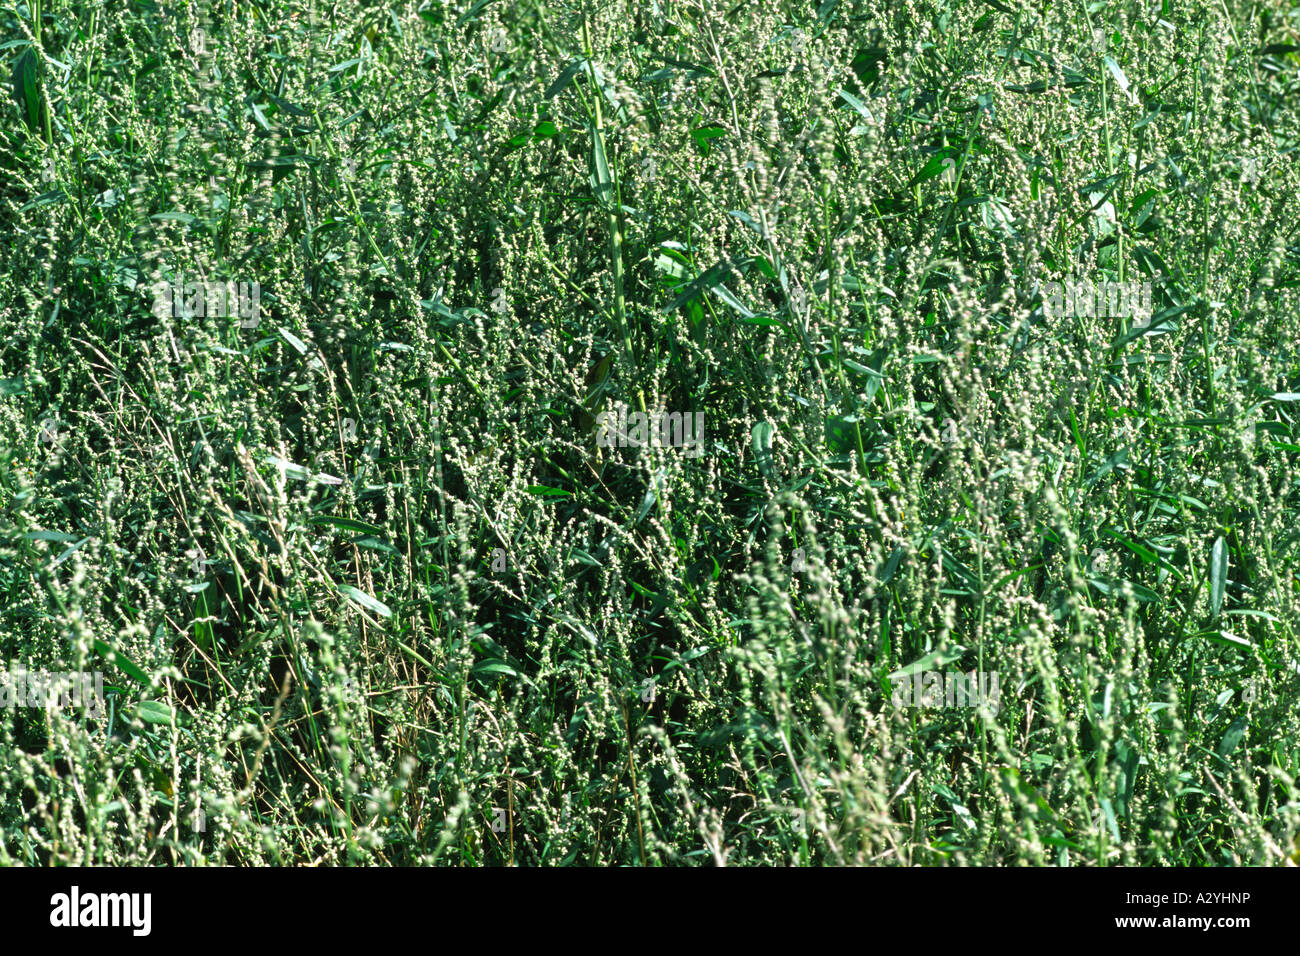 Fleurs d'Arroches (Atriplex patula) une mauvaise herbe commune de plus en plus de culture sur les restes d'un muckheap. Powys, Pays de Galles, Royaume-Uni. Banque D'Images